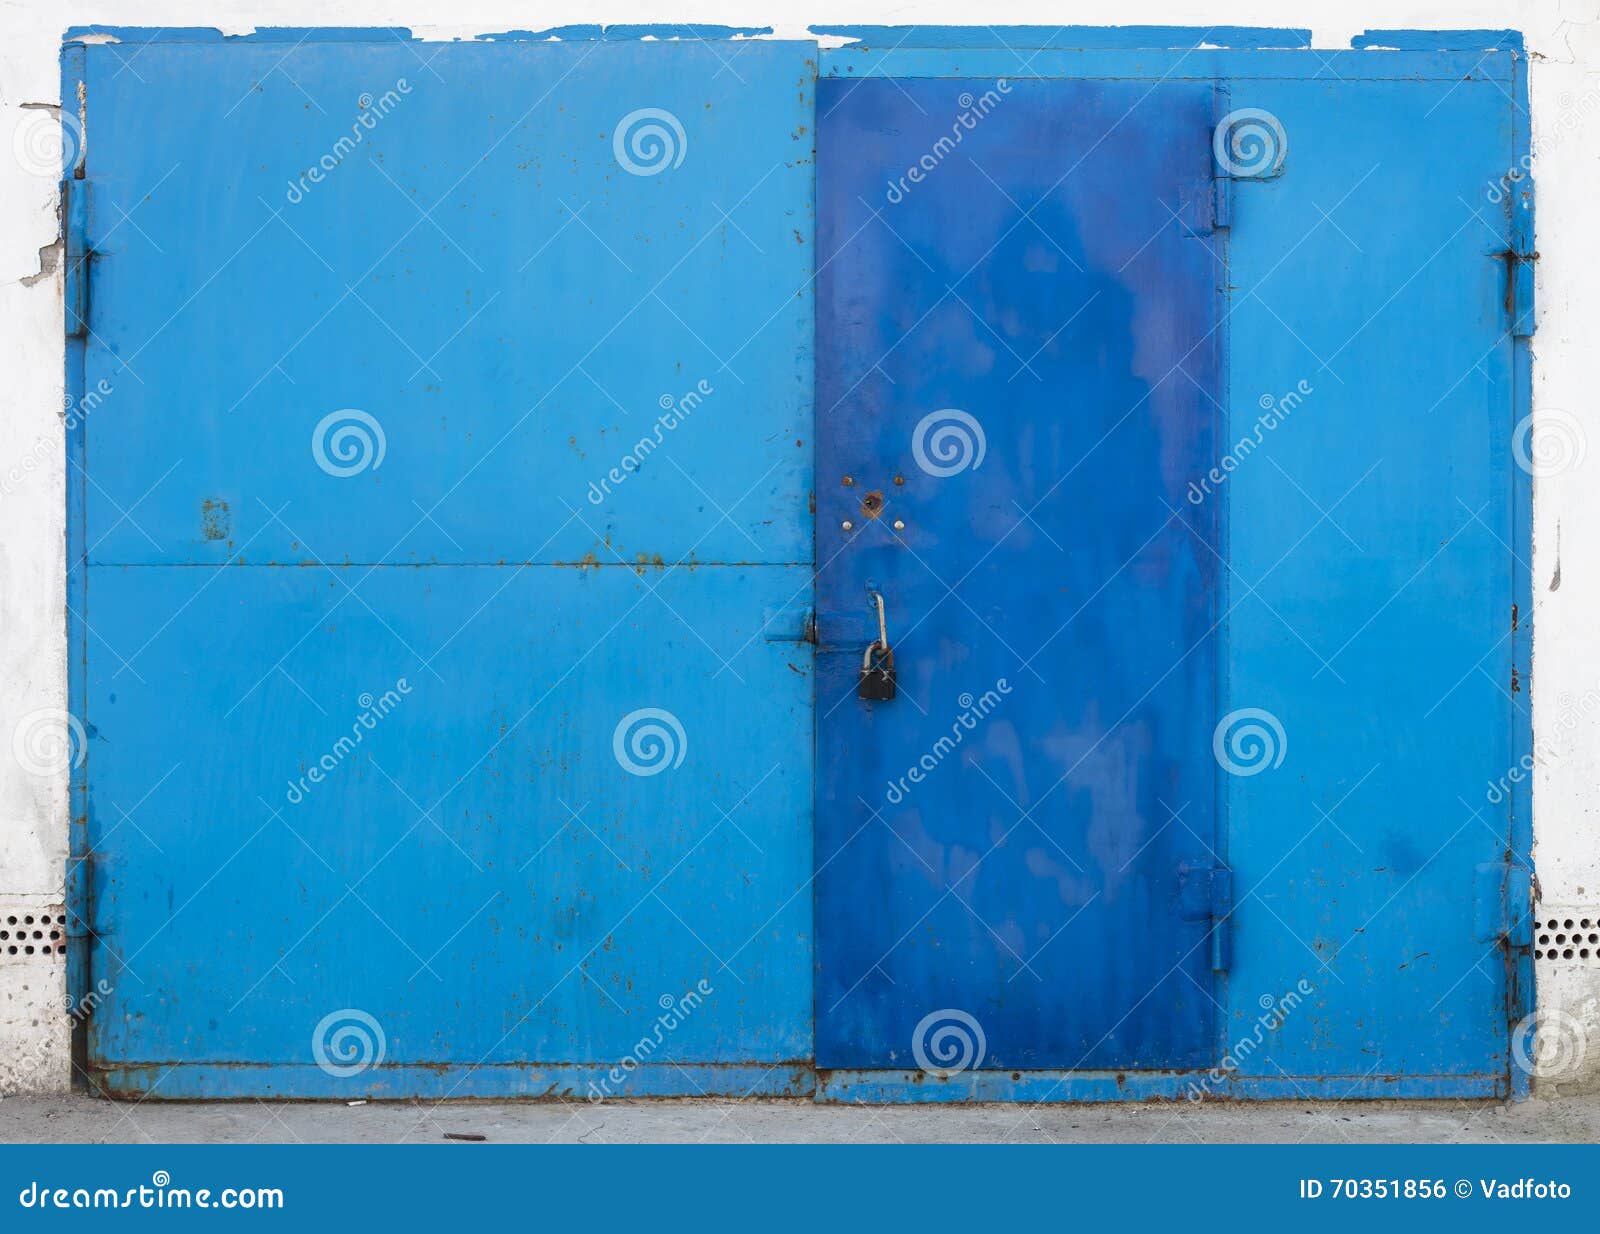 Old metal warehouse door stock photo. Image of door, design - 70351856